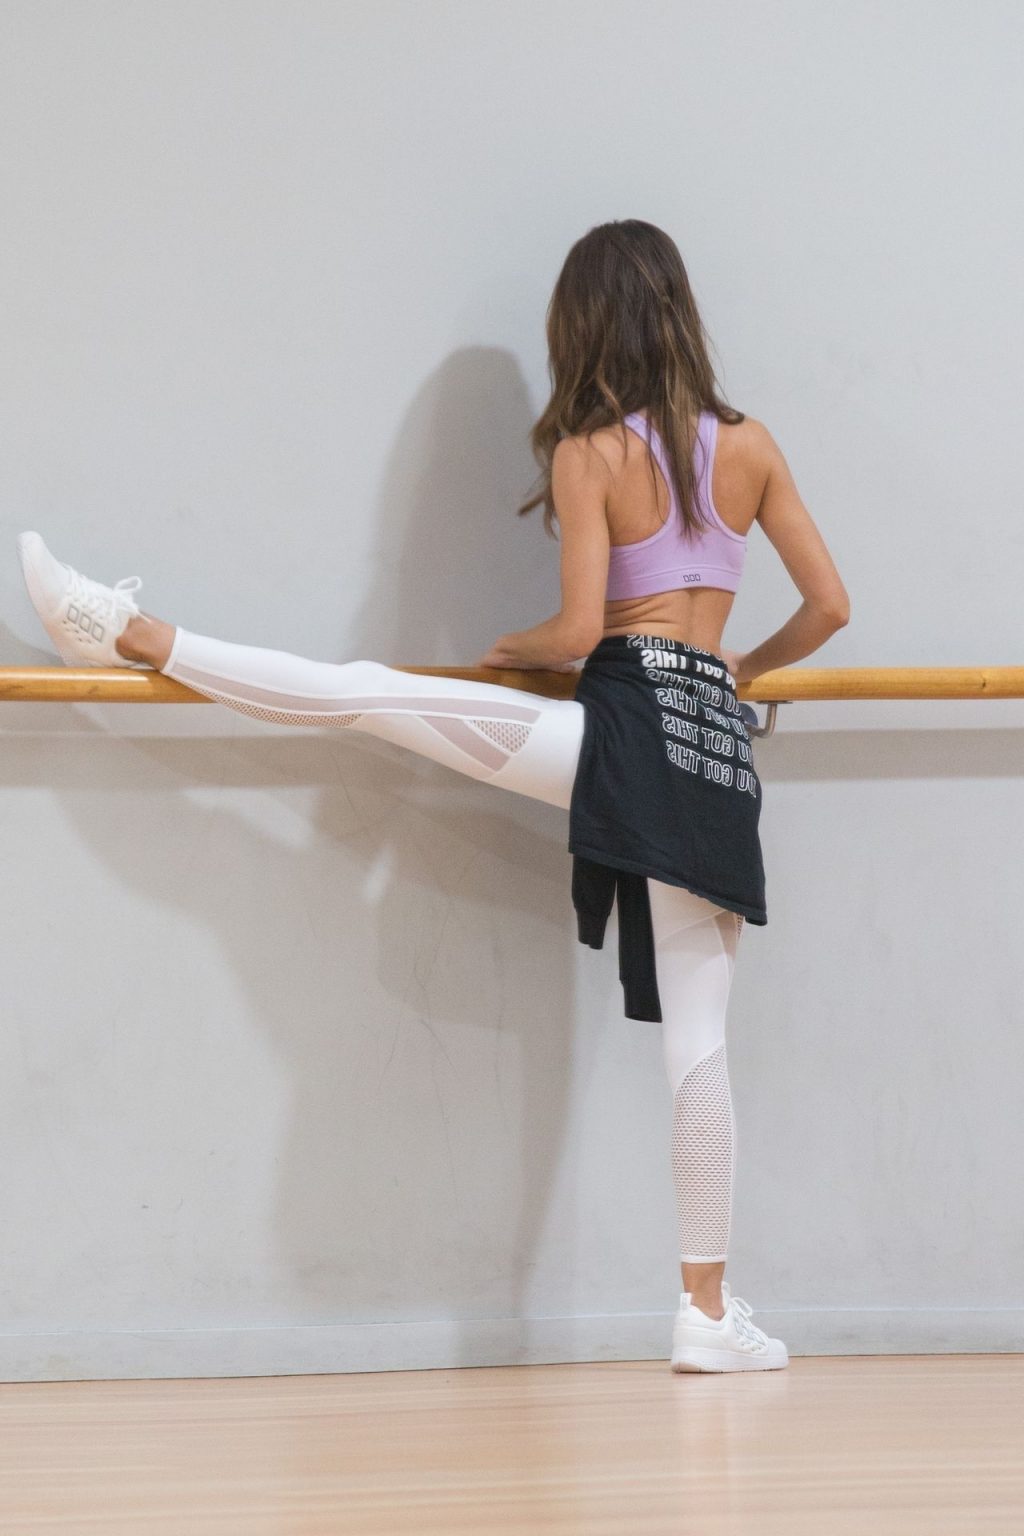 KC Osborne is Seen Practicing Her Dancing at Romina’s Dance Studio in Melbourne (94 Photos)